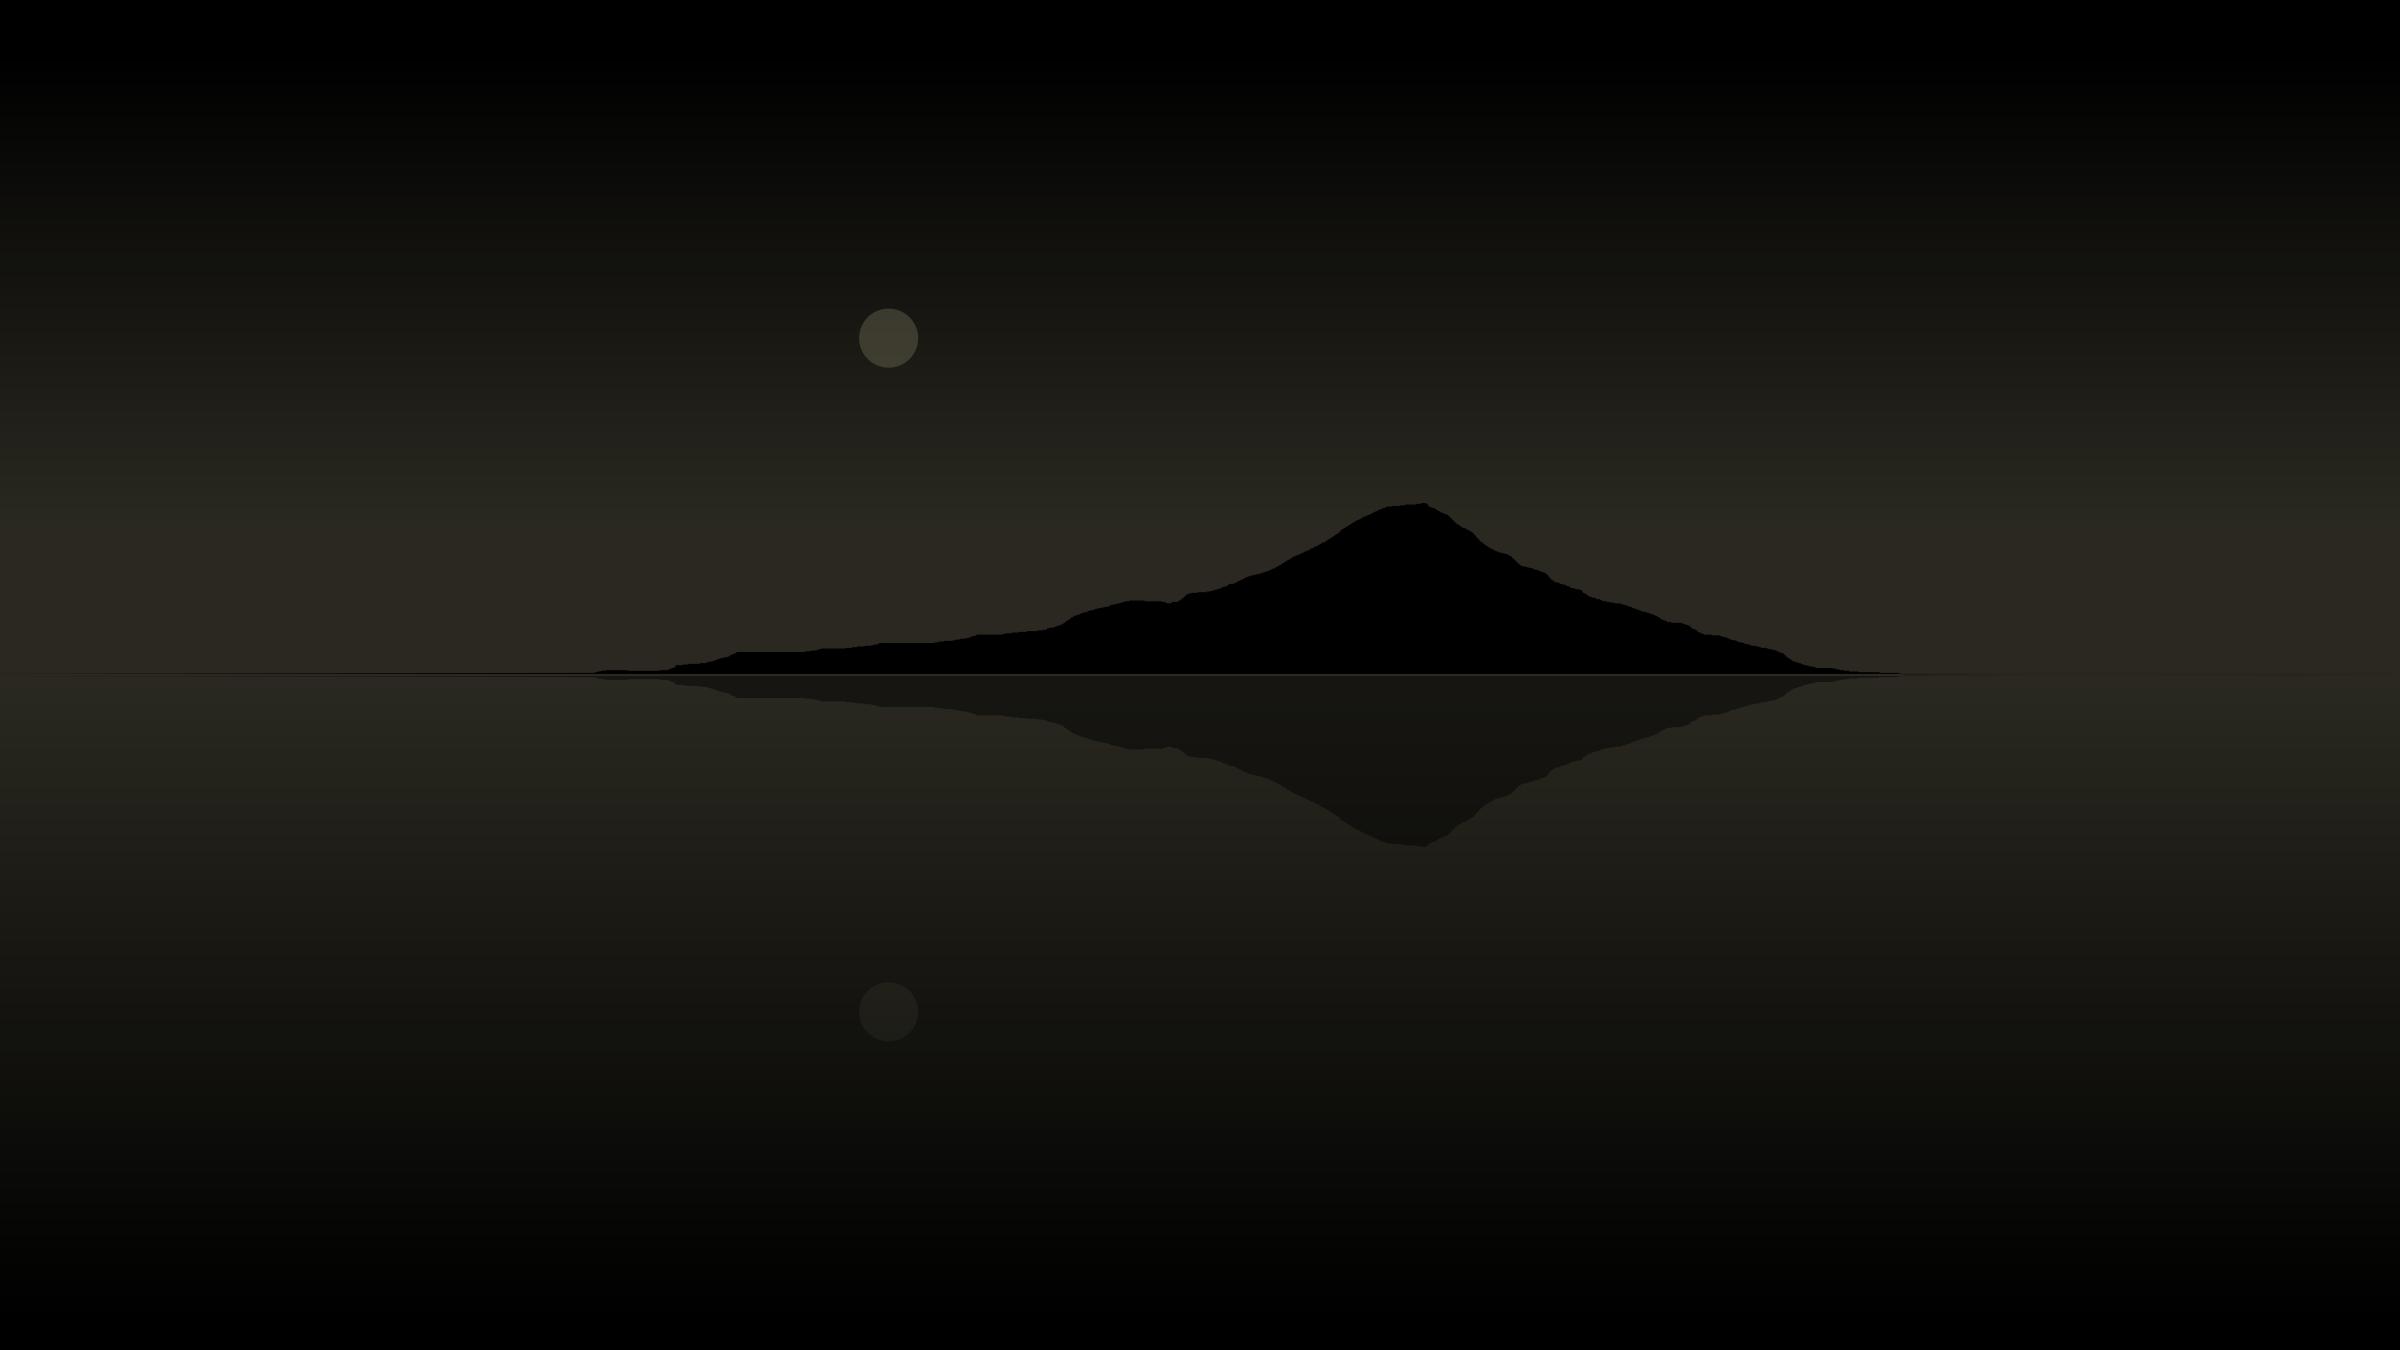 Suigetsu - Mount Fuji icons